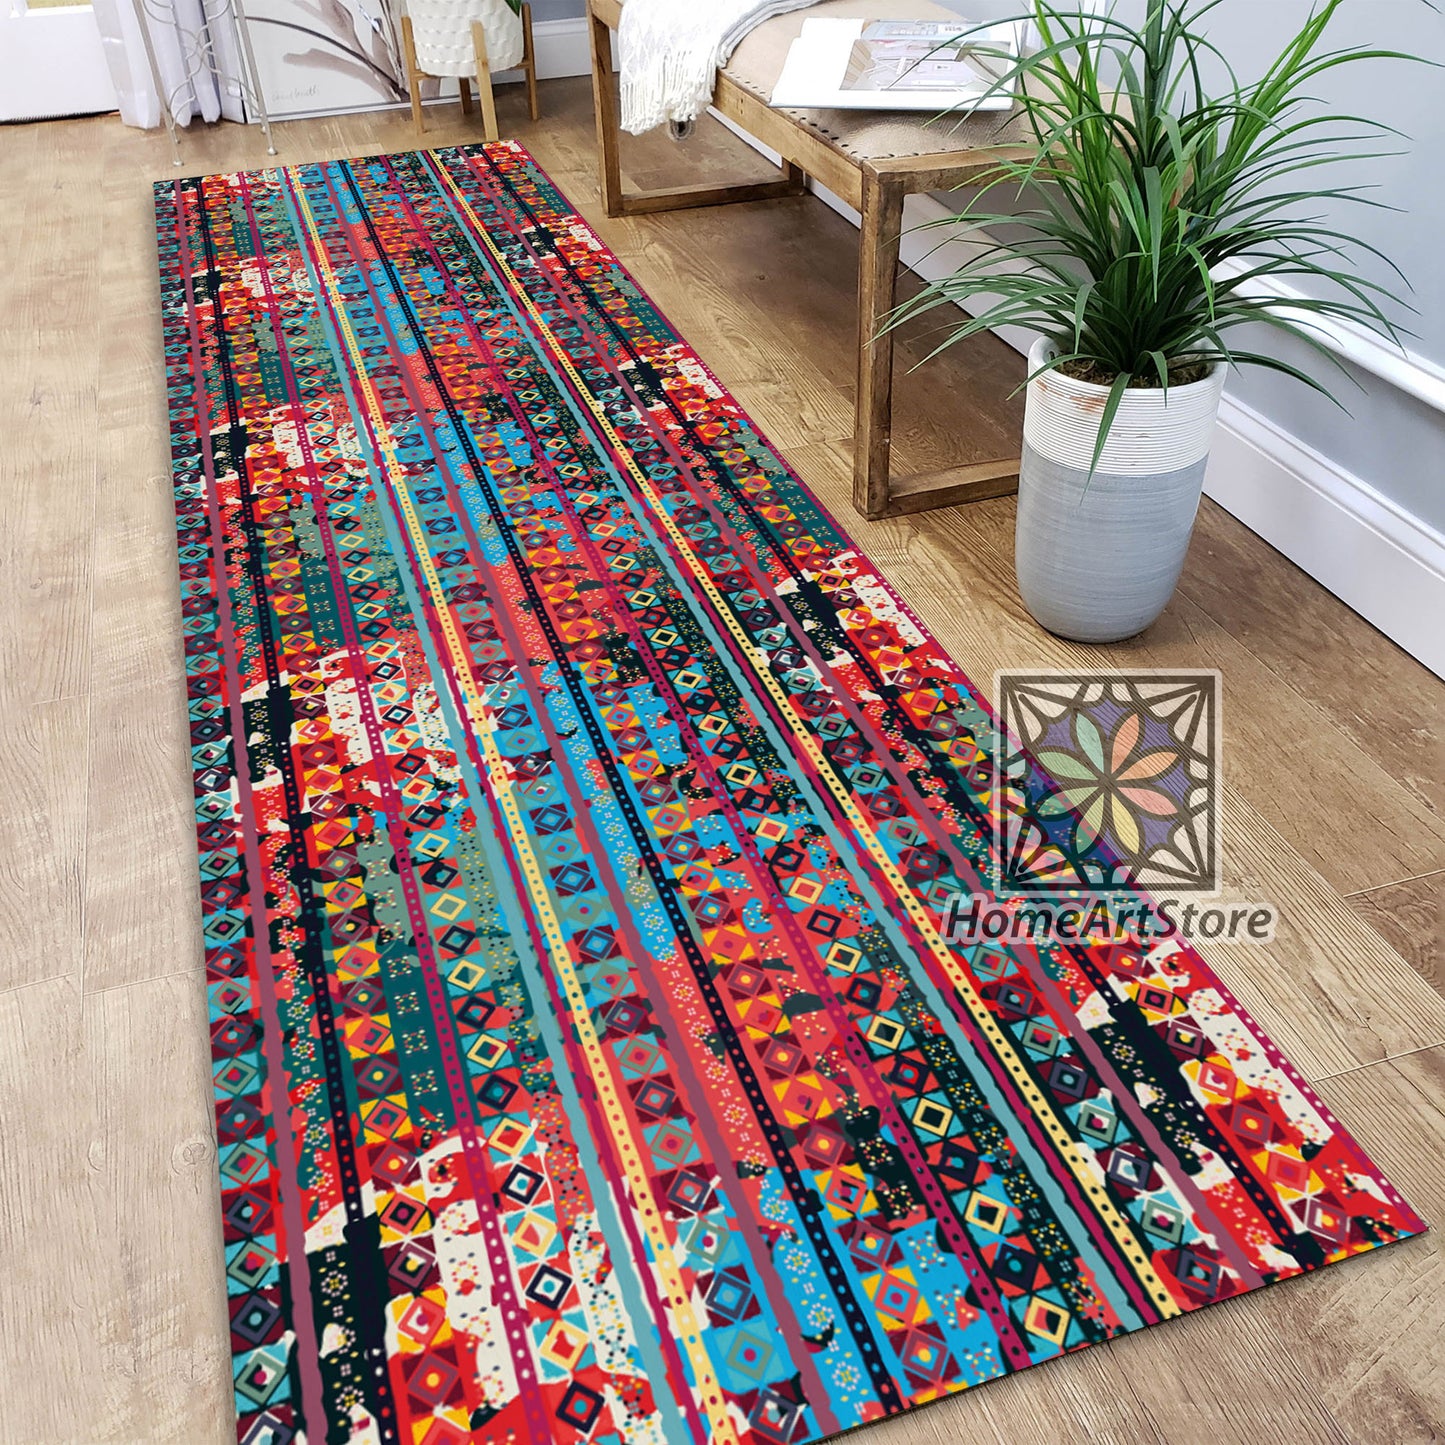 Ethnic Boho Runner Rug, Colorful Kitchen Runner Carpet, Geometric Hallway Runner Rug, Tribal Home Decor